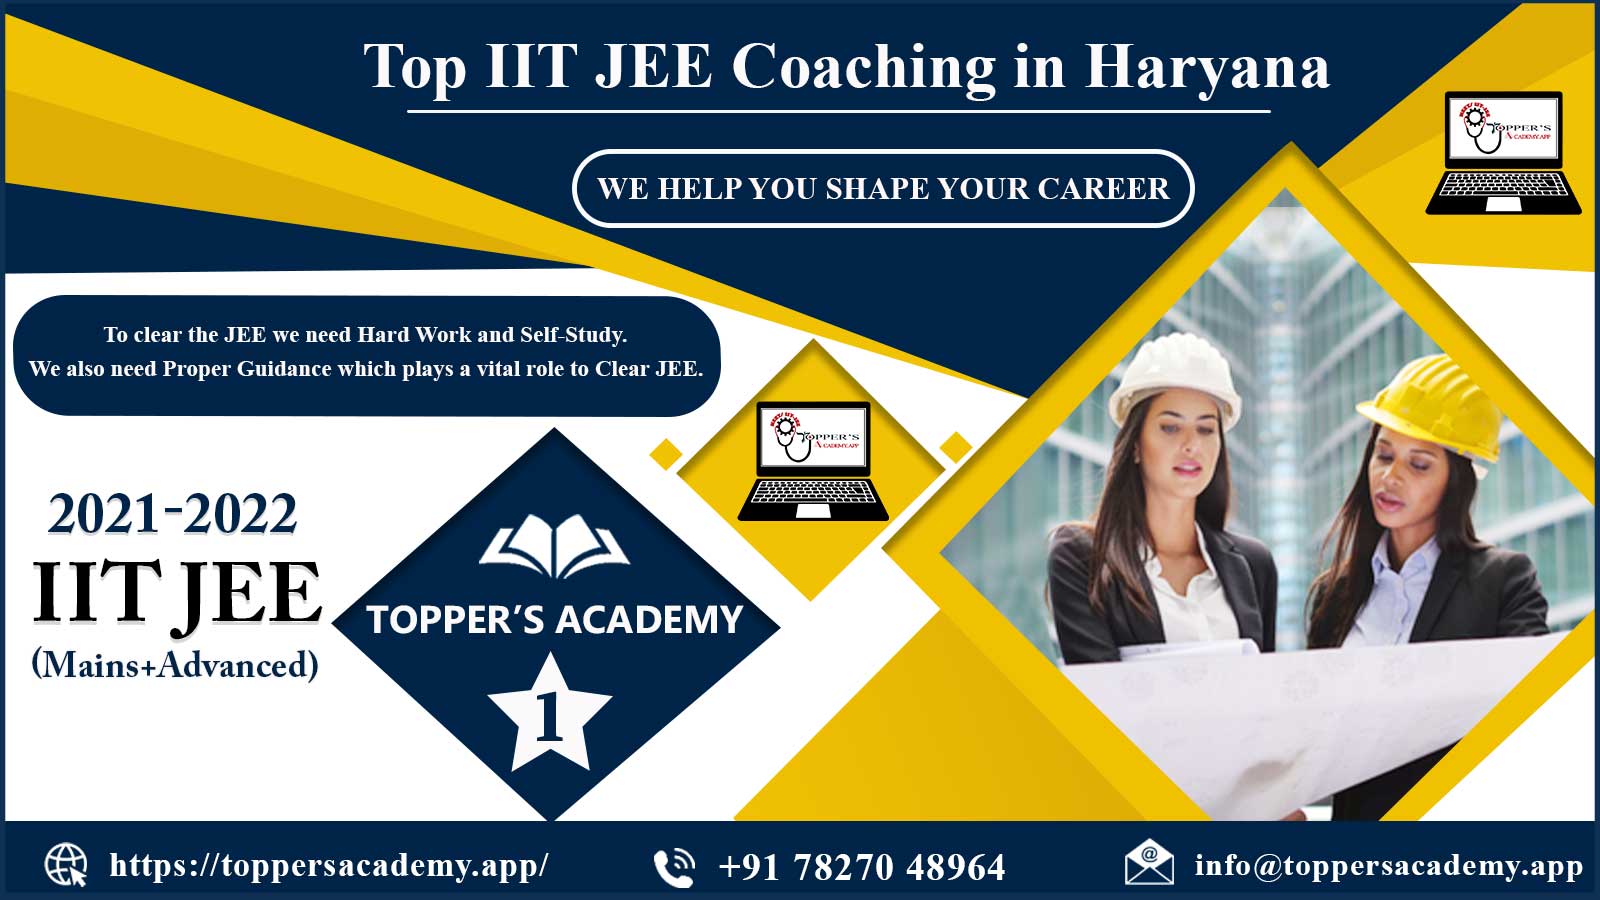 Toppers Academy IIT JEE Coaching in Haryana